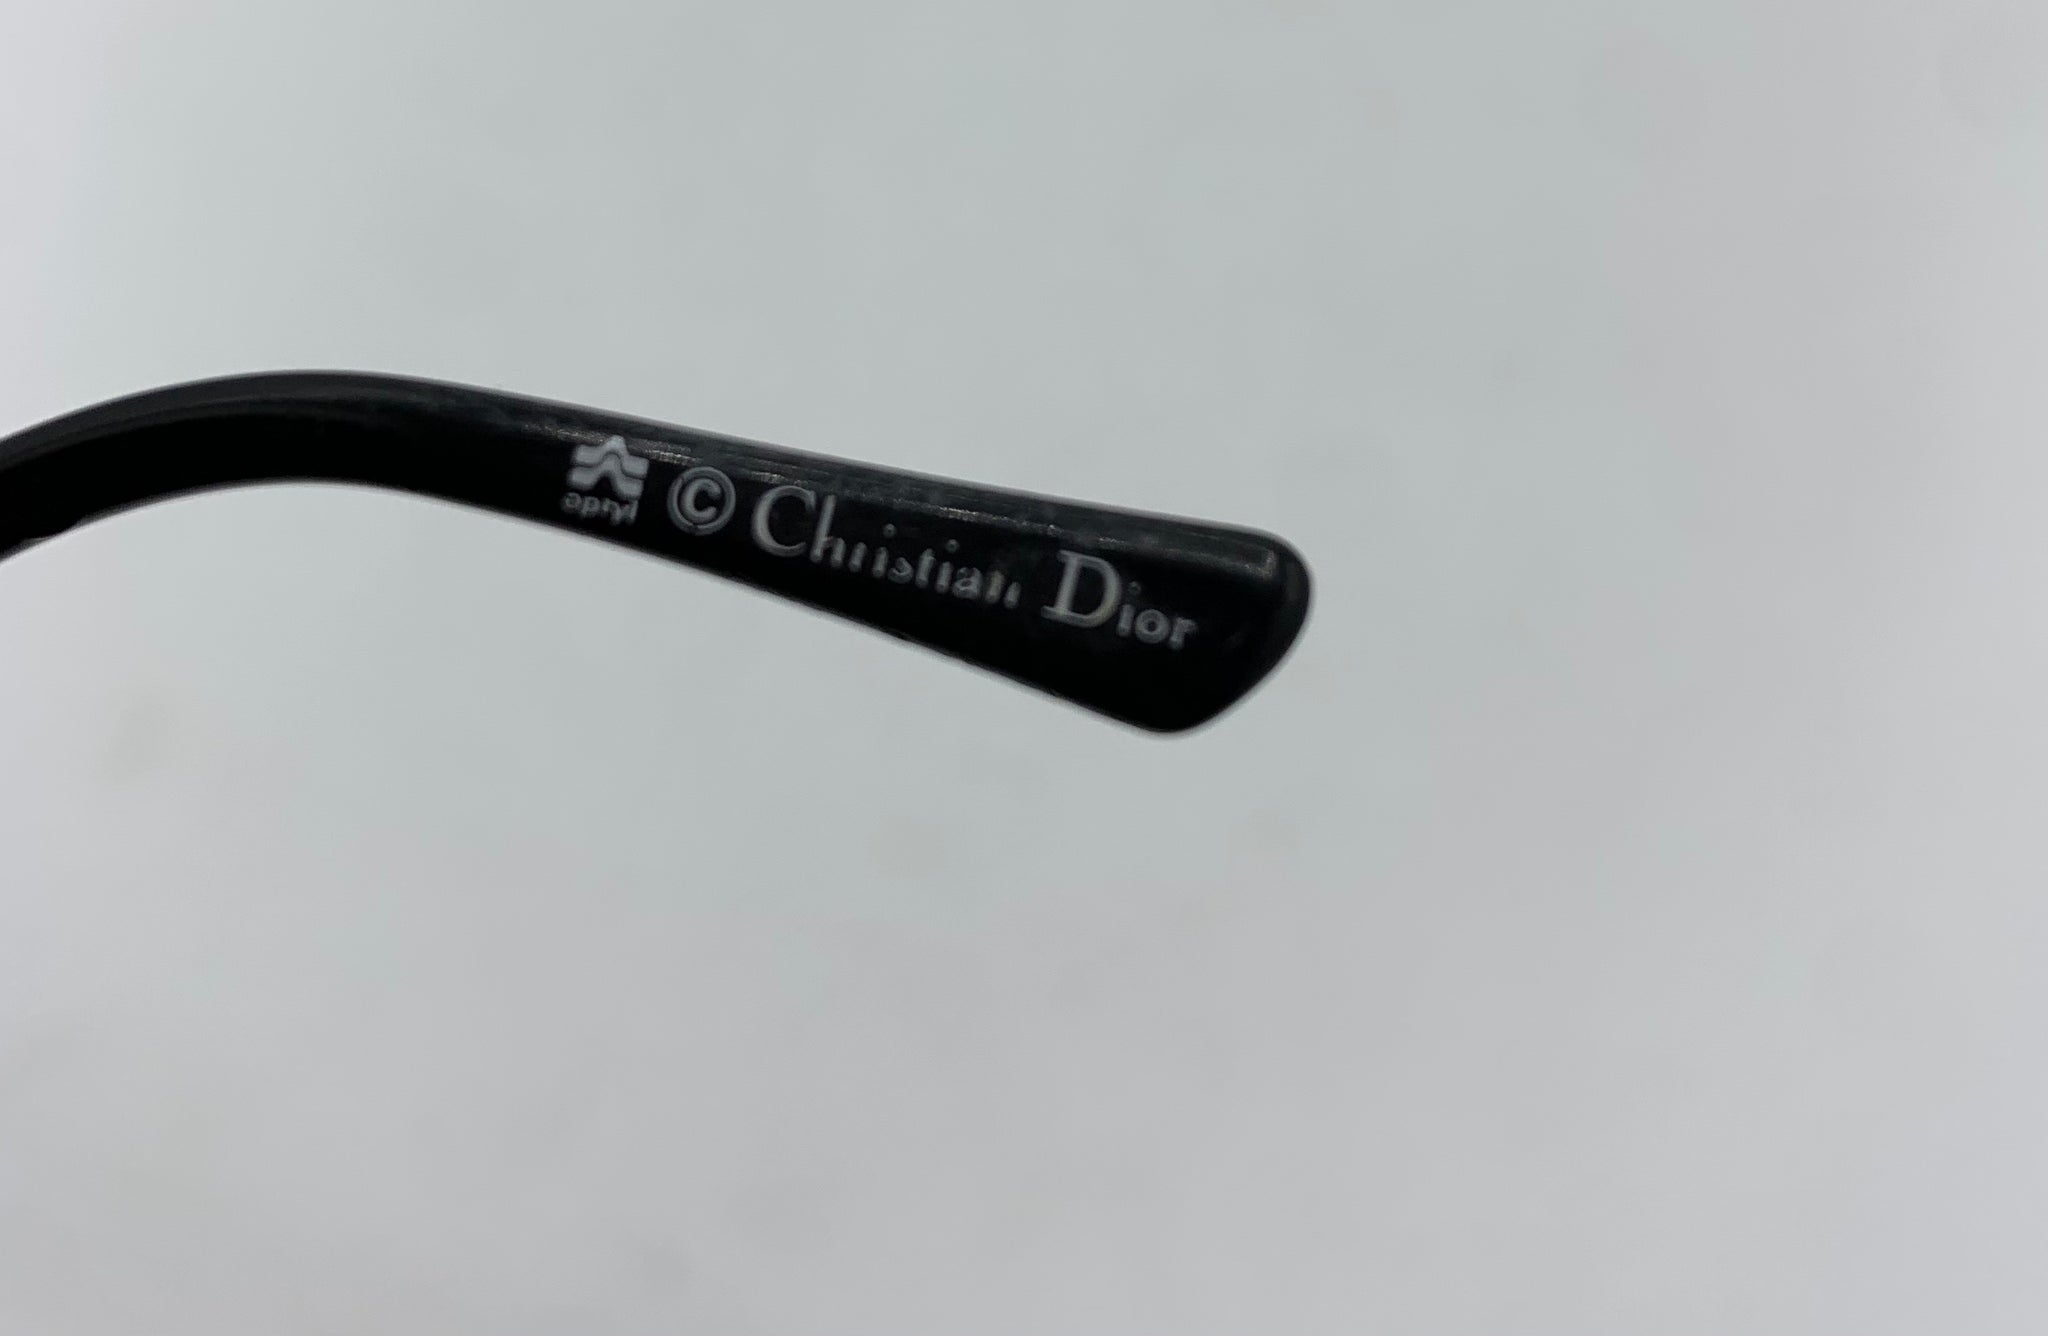 Christian Dior eyewear stamp